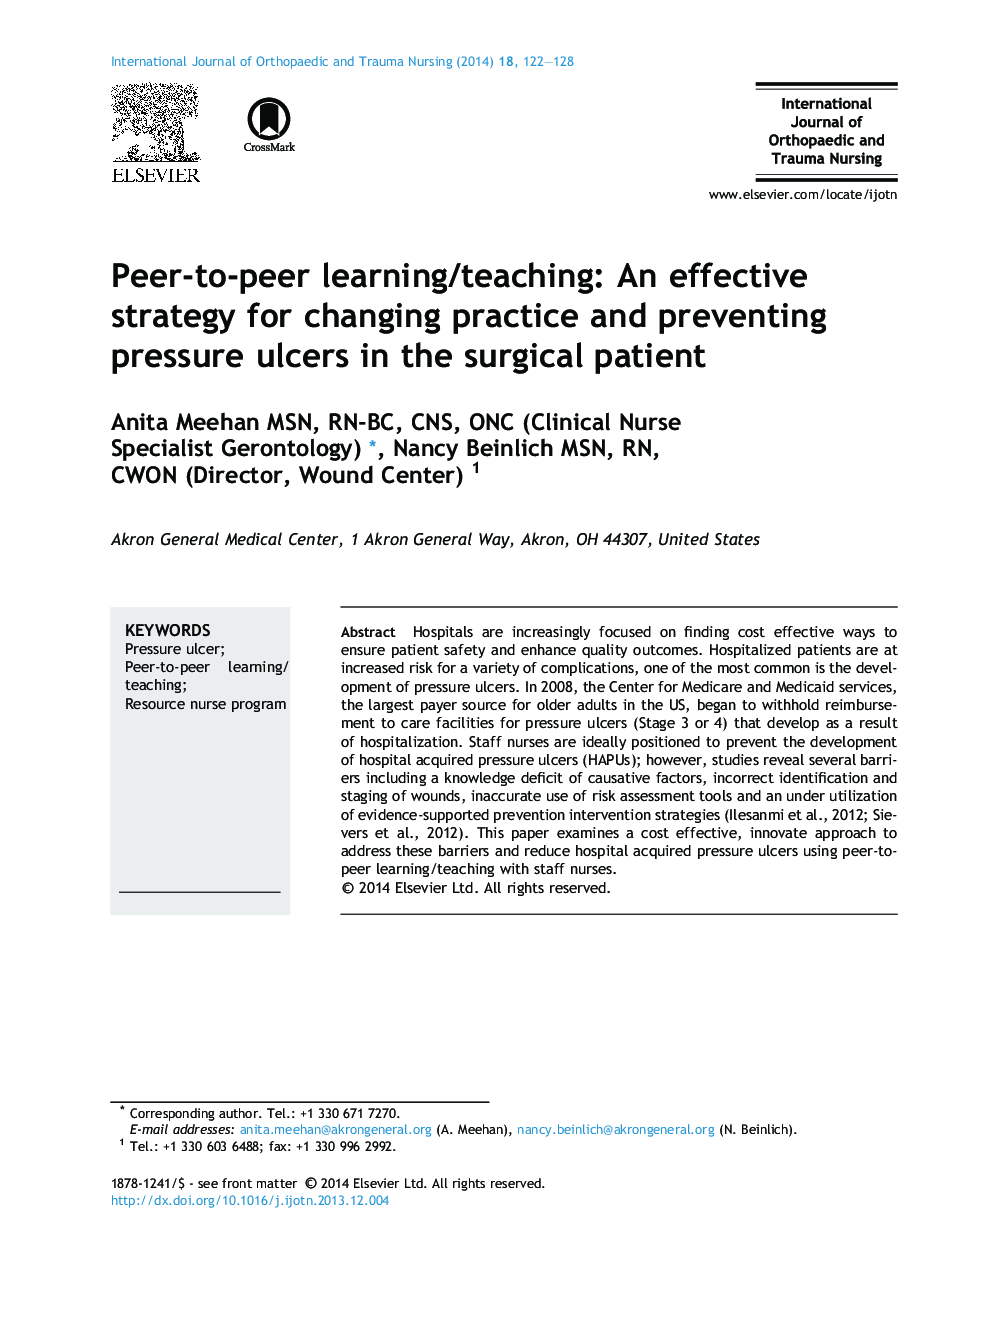 یادگیری/آموزش همکار به همکار: یک استراتژی موثر برای تغییر عمل و جلوگیری از زخم بستر در بیمار جراحی